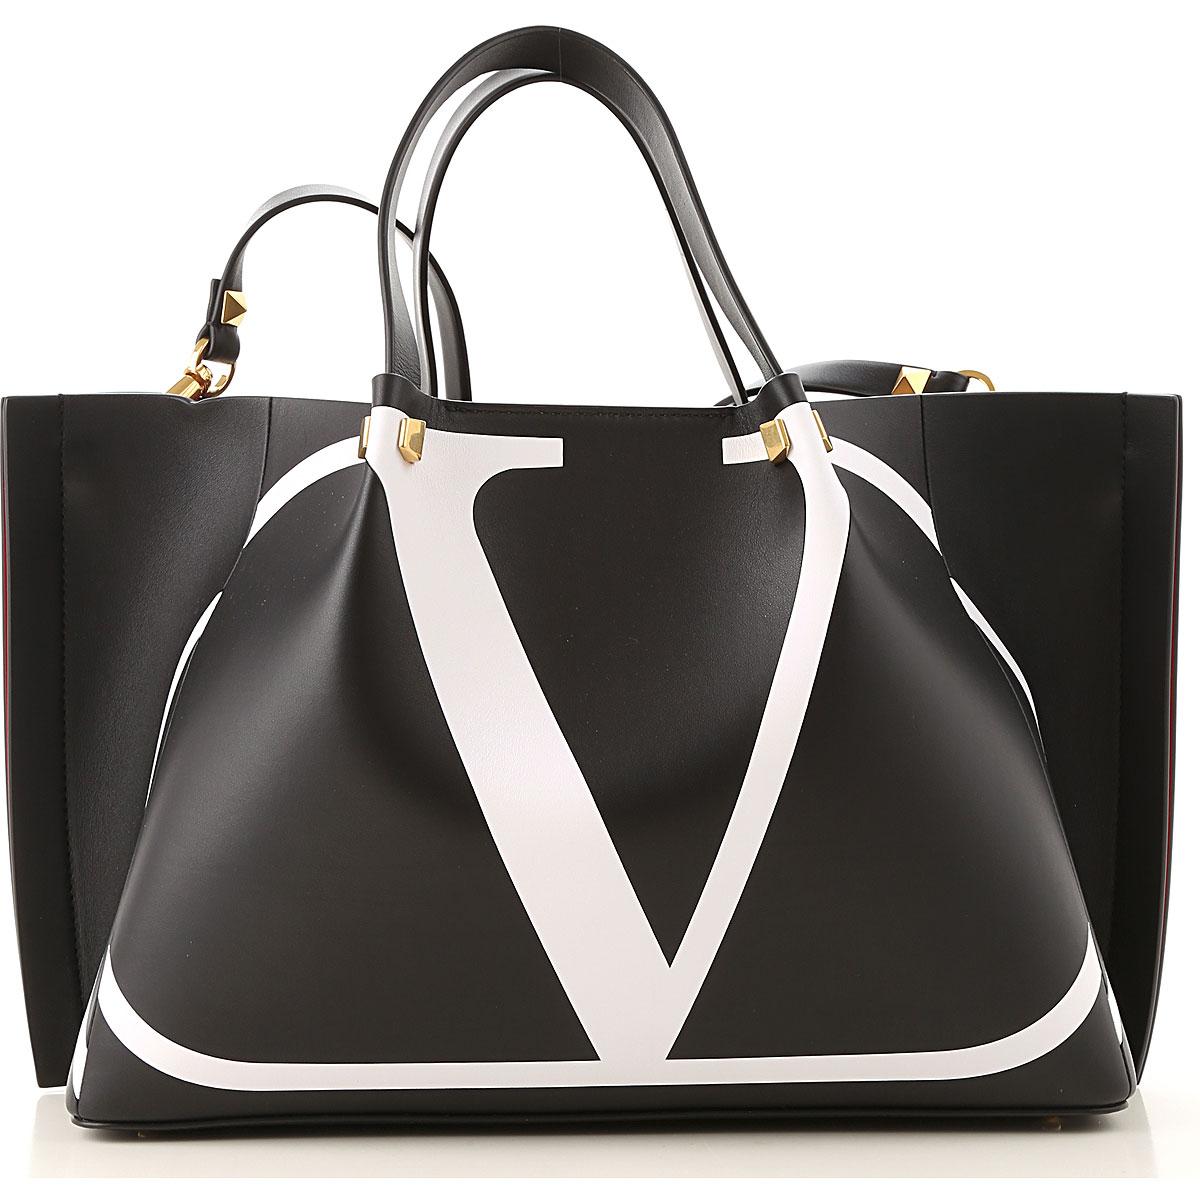 Valentino Handbags & Purses | semashow.com